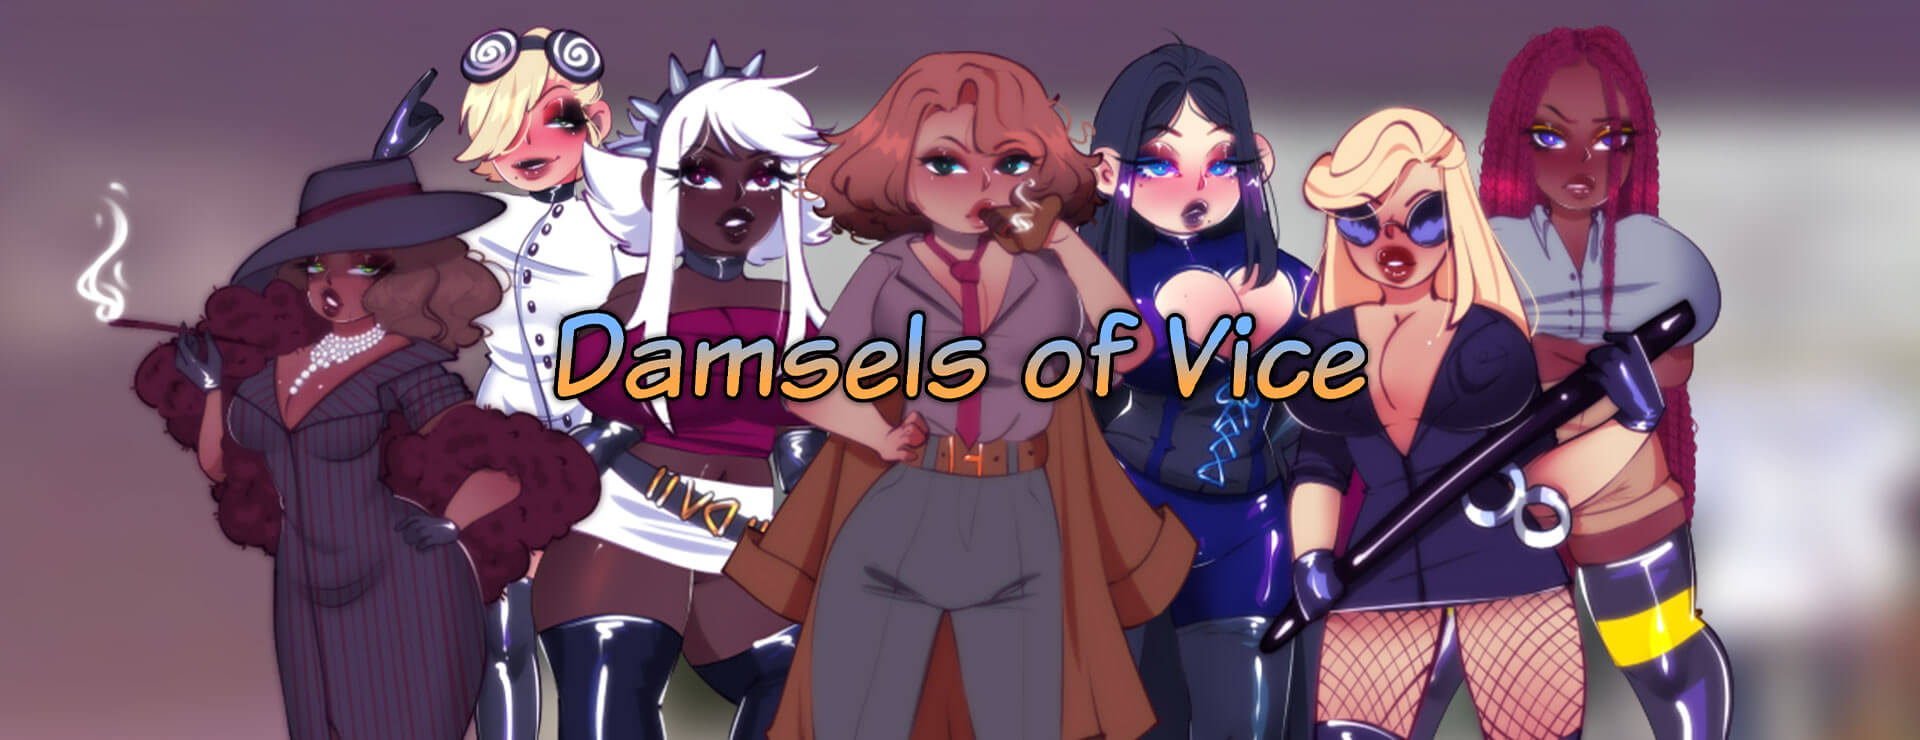 Damsels of Vice - RPG Spiel